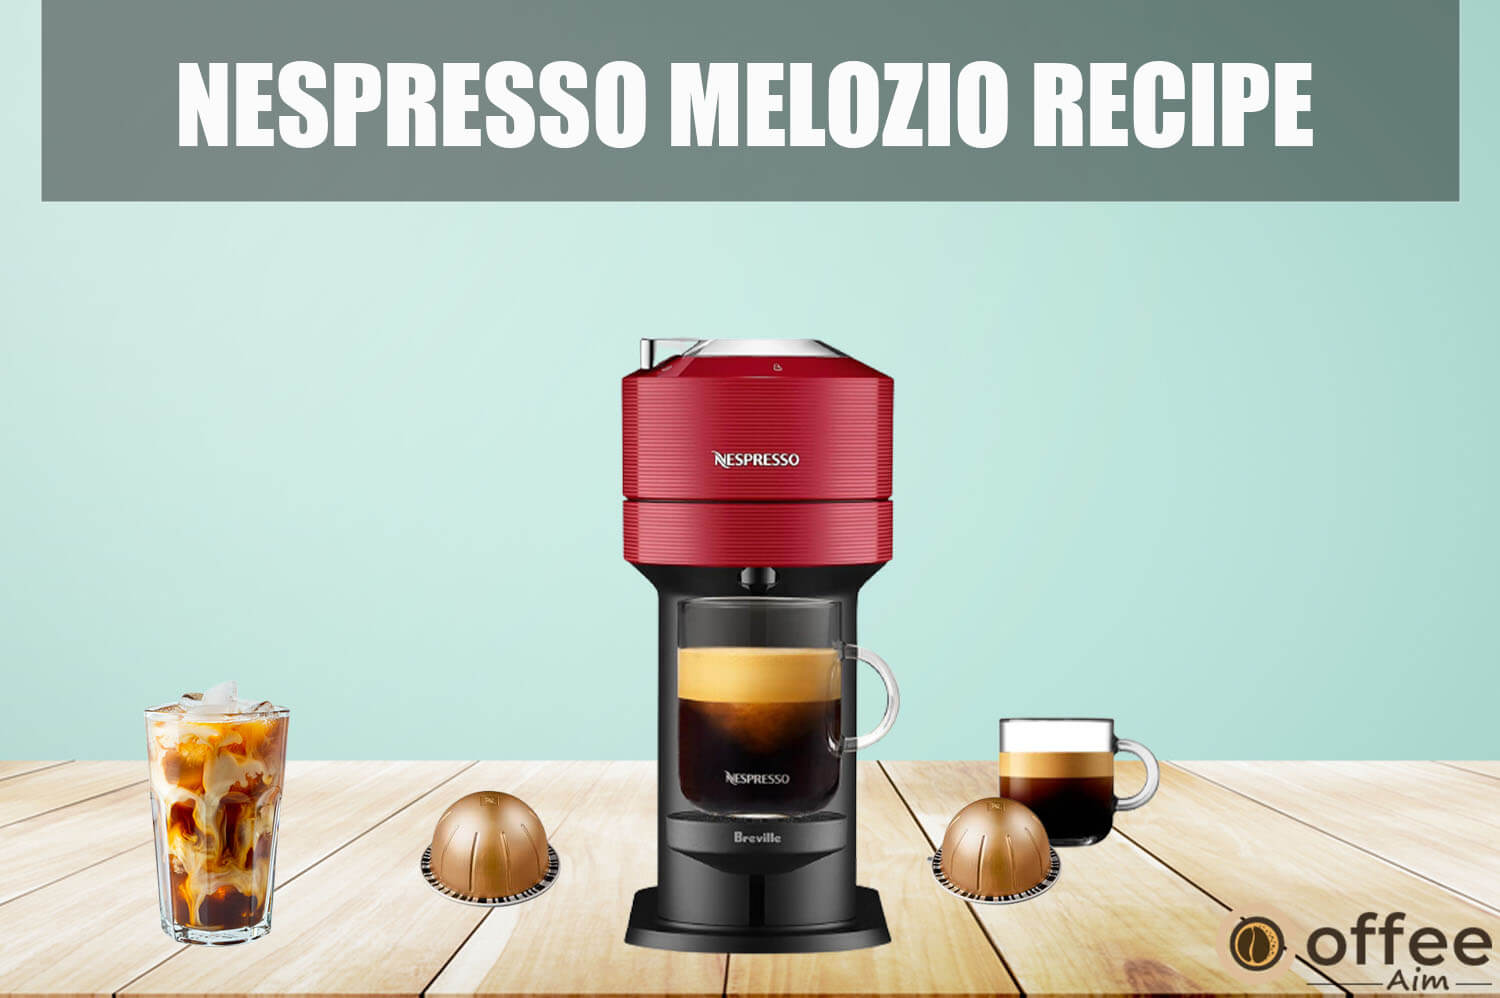 Featured image for the article "Nespresso Melozio Recipe"